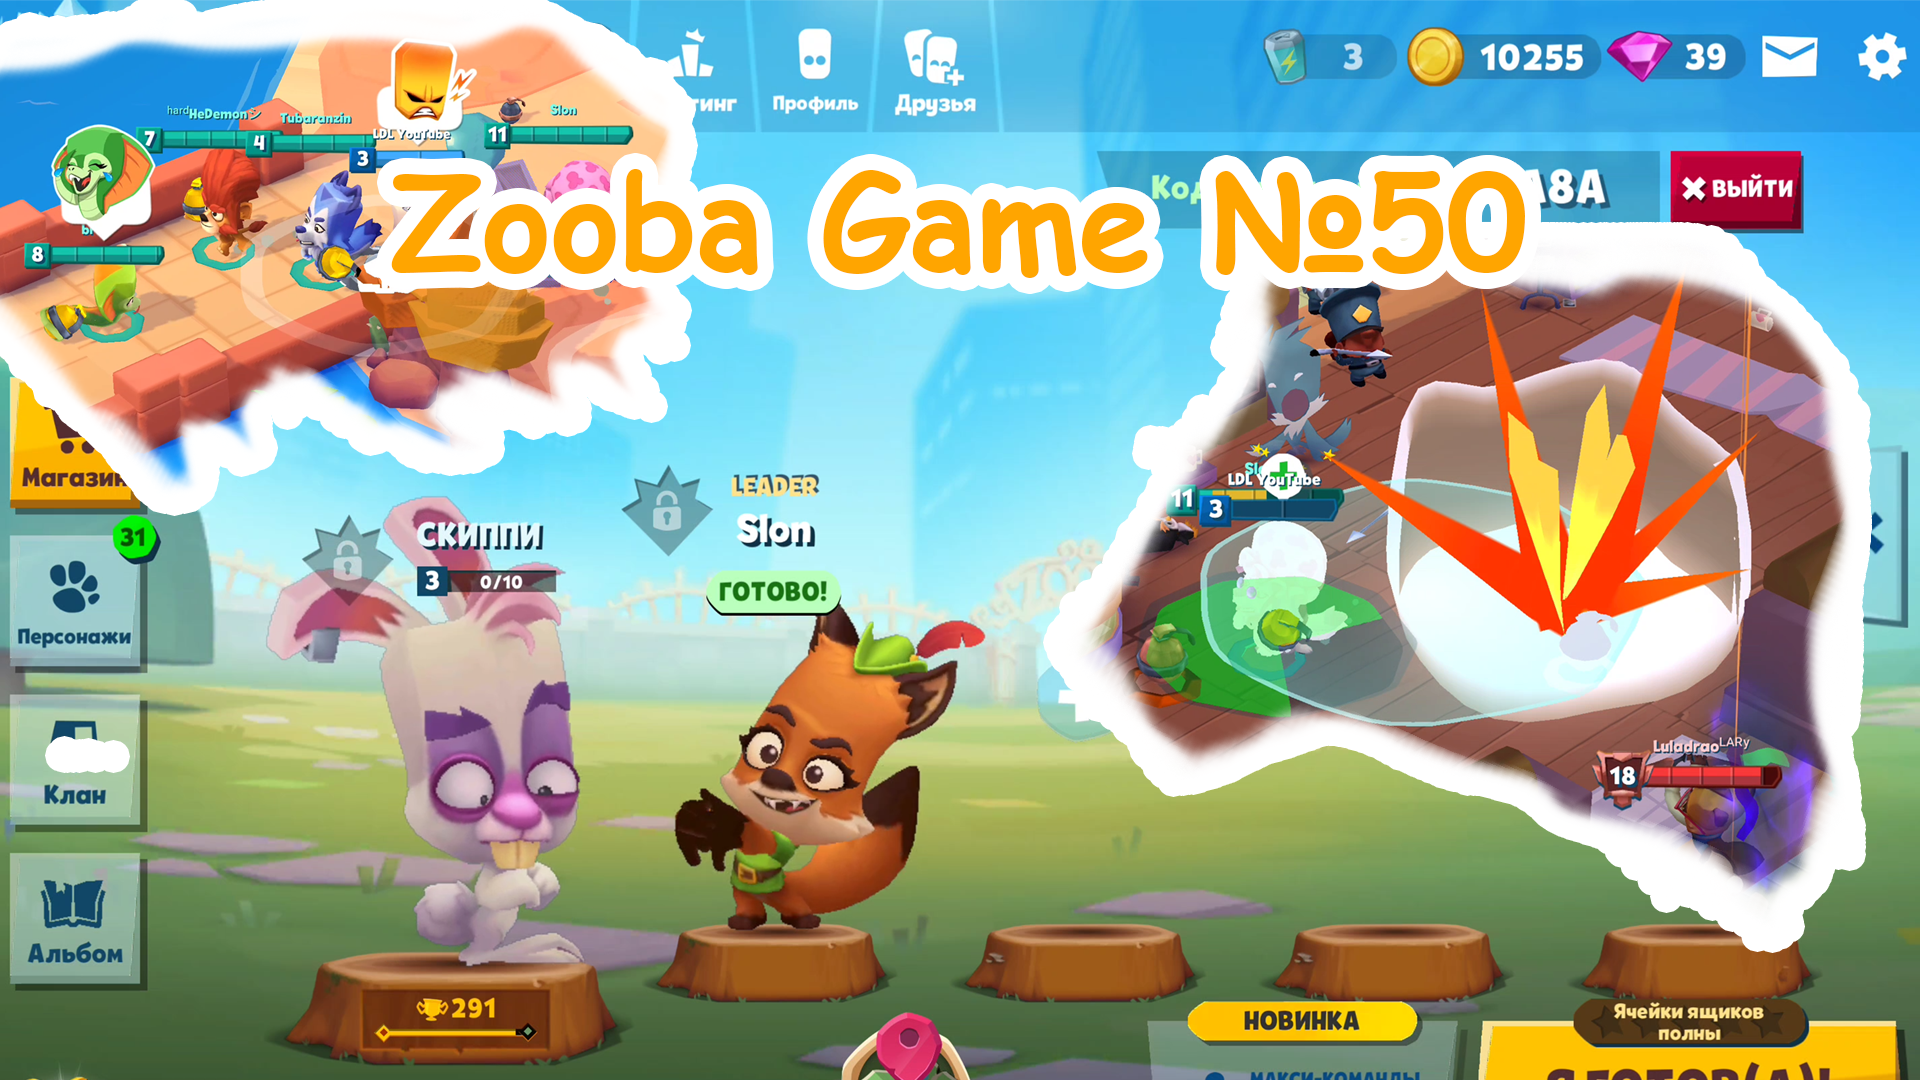 Zooba Game #50 #zooba